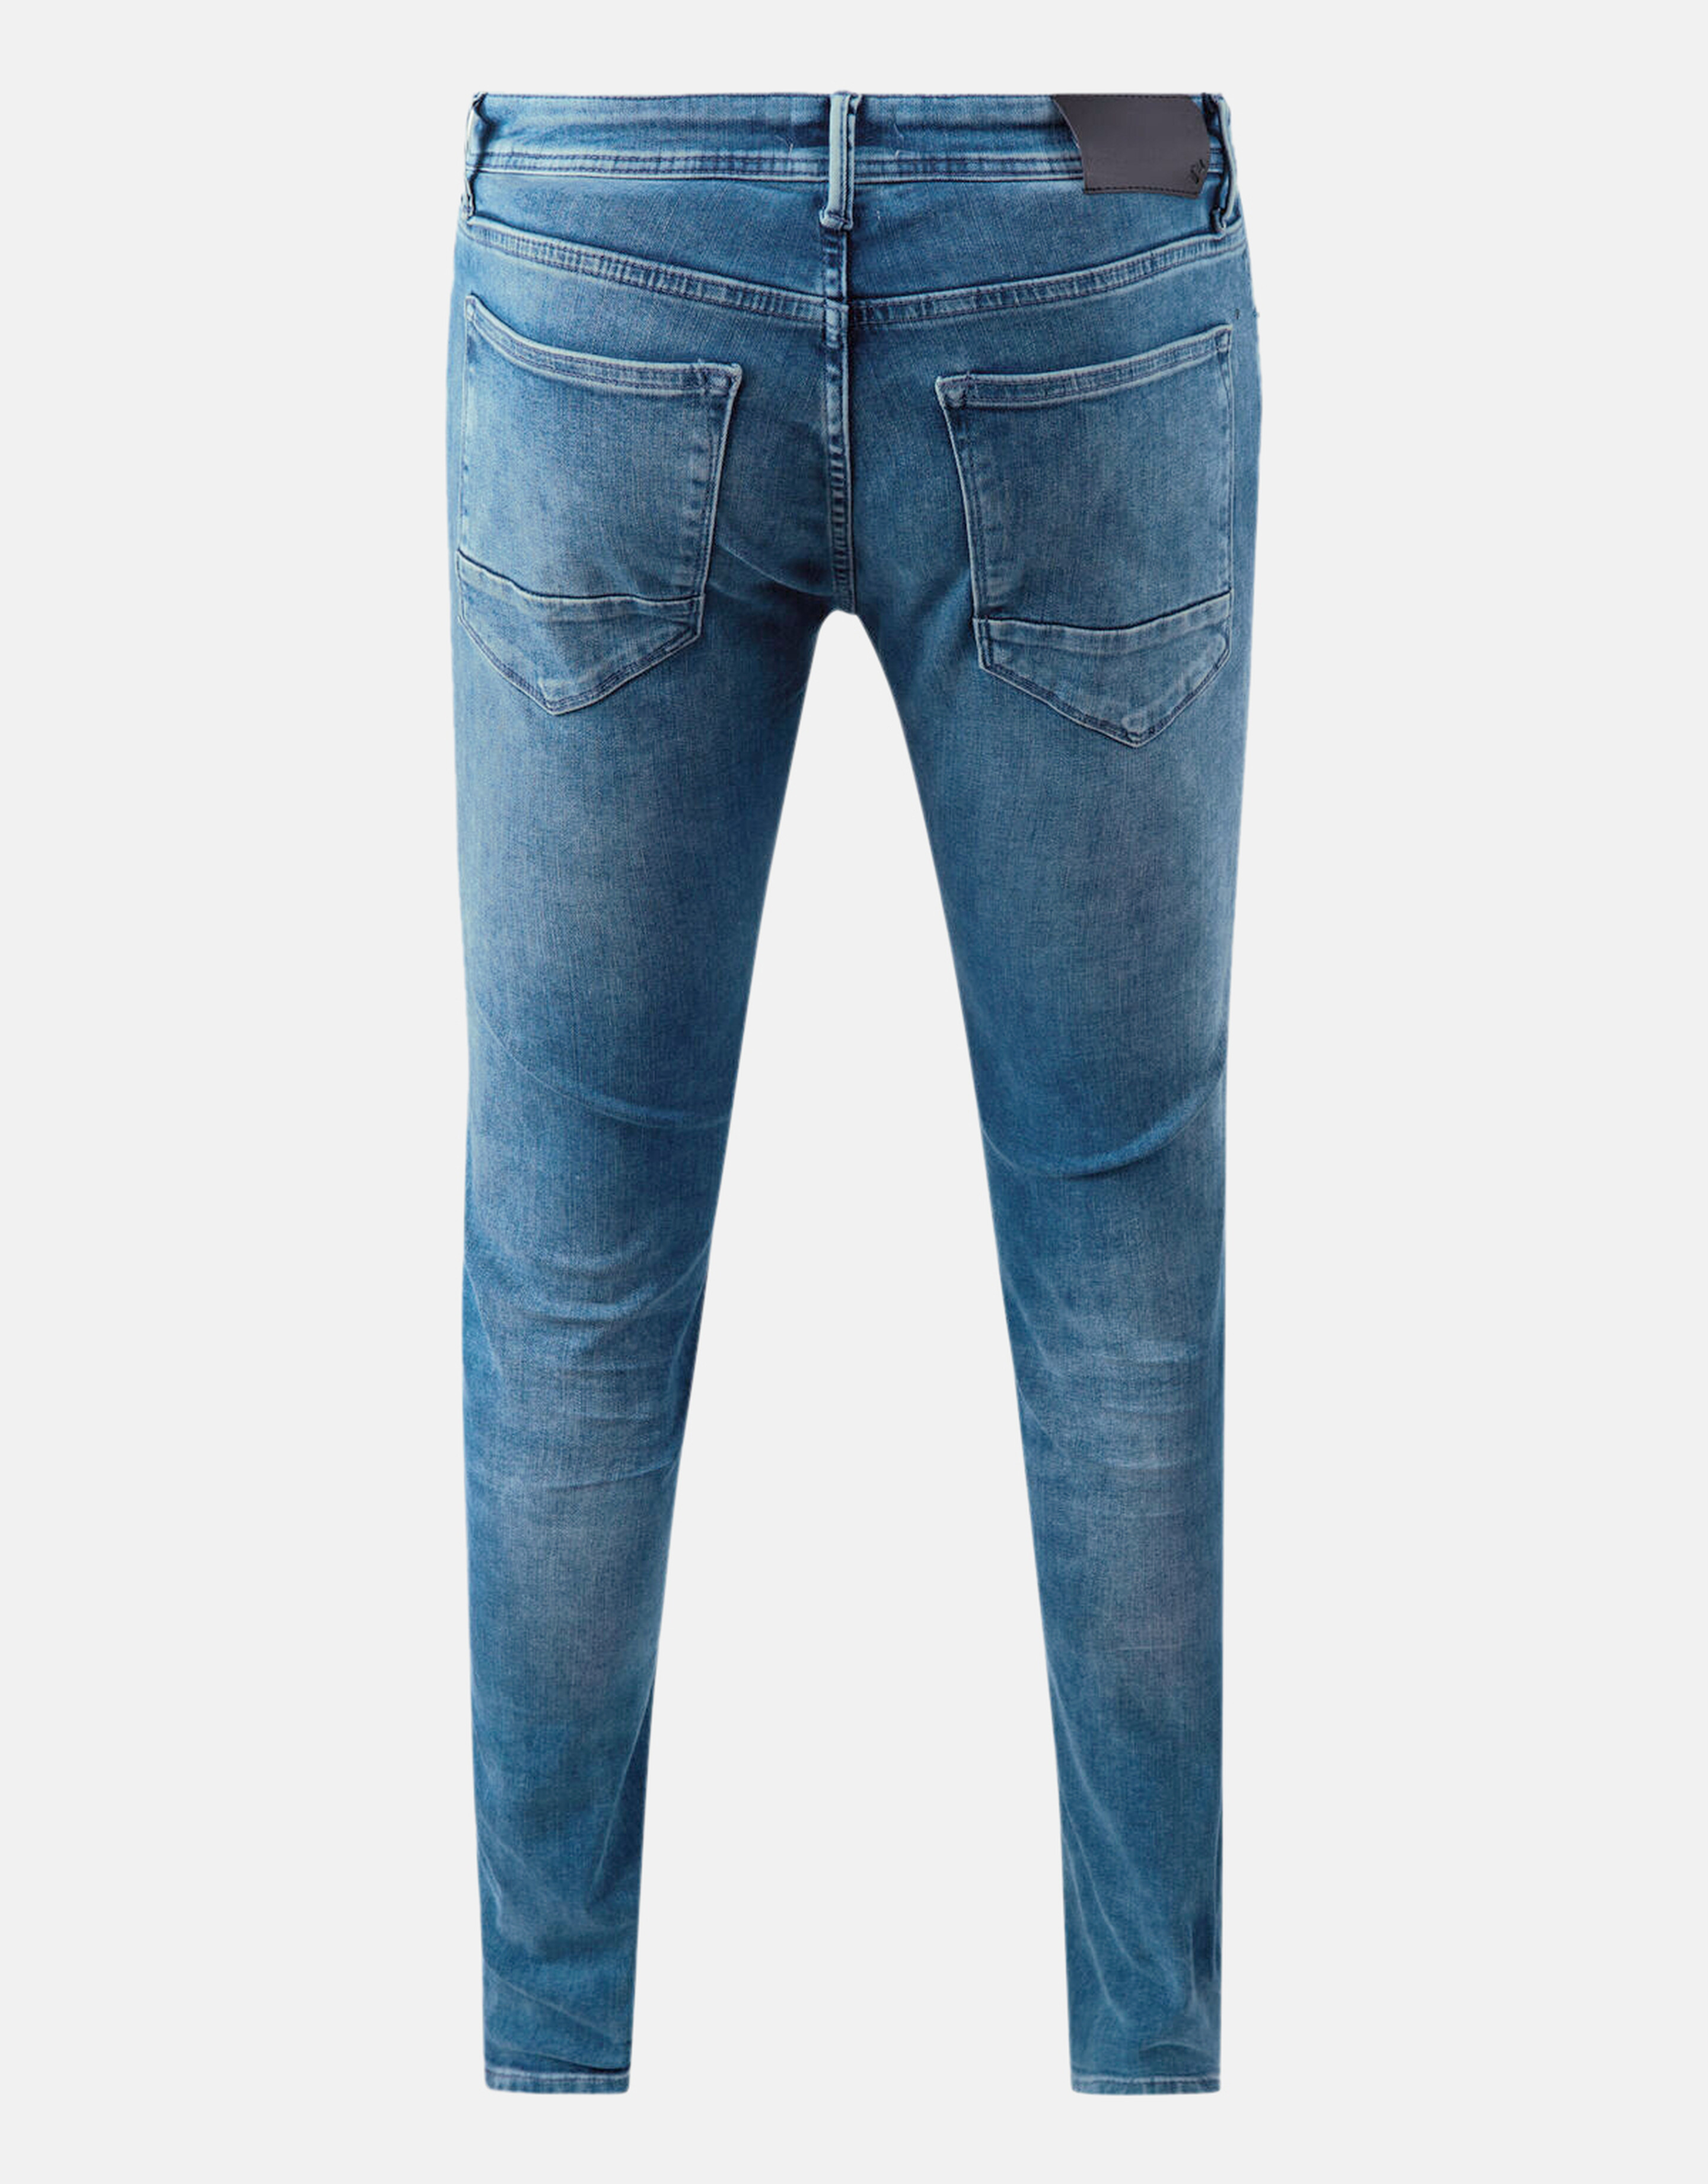 Slim Jeans L32 Refill